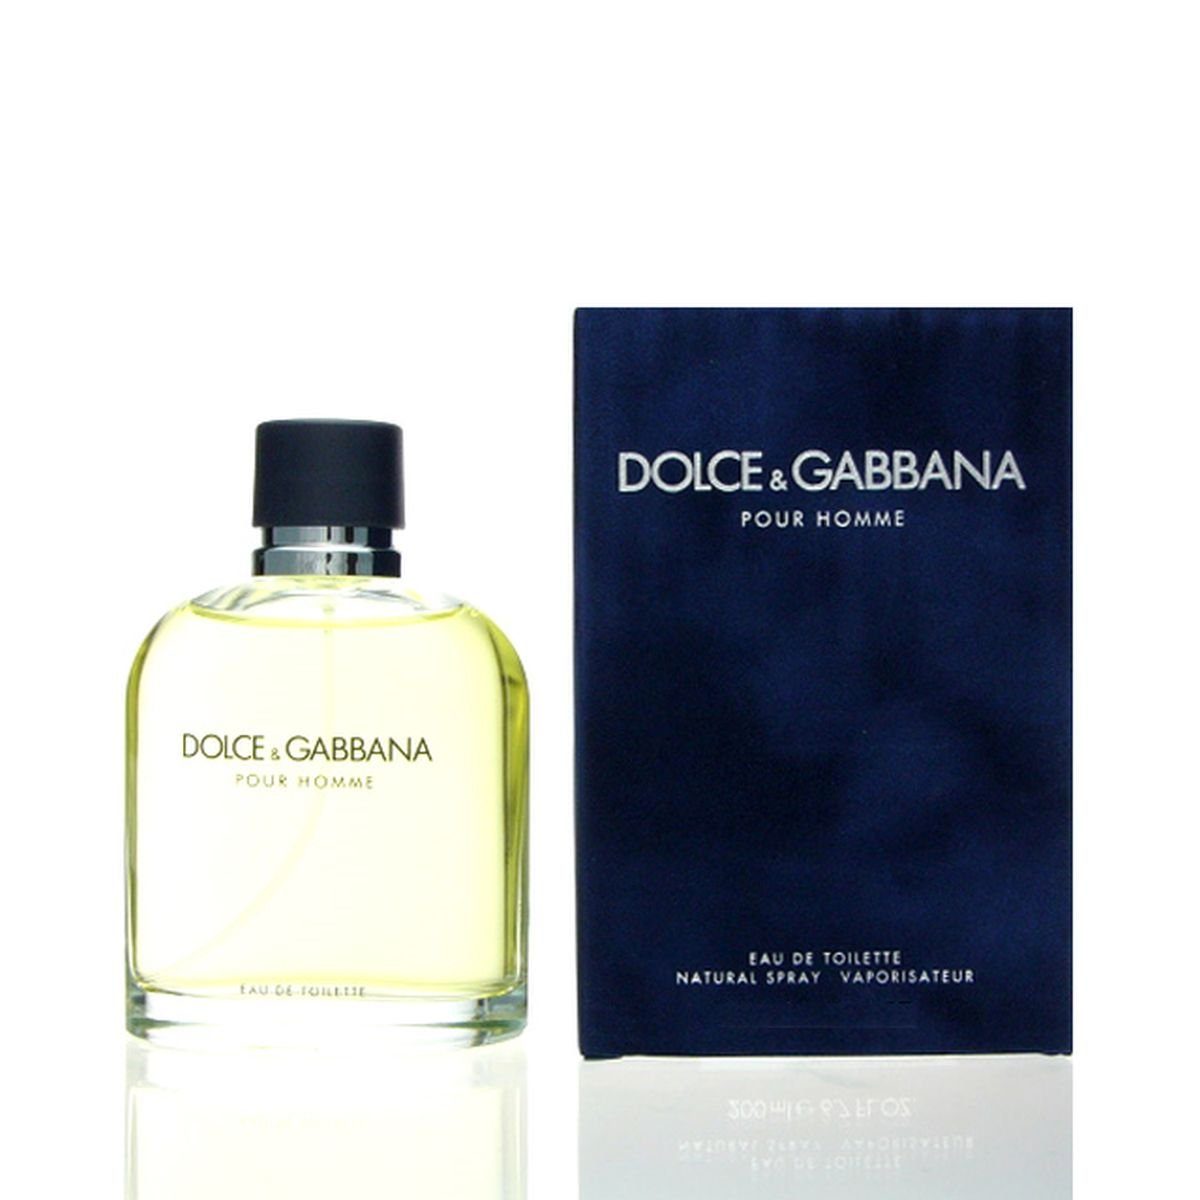 Pour de D&G Eau Gabbana & & Homme Toilette Toilette de Dolce GABBANA DOLCE Eau